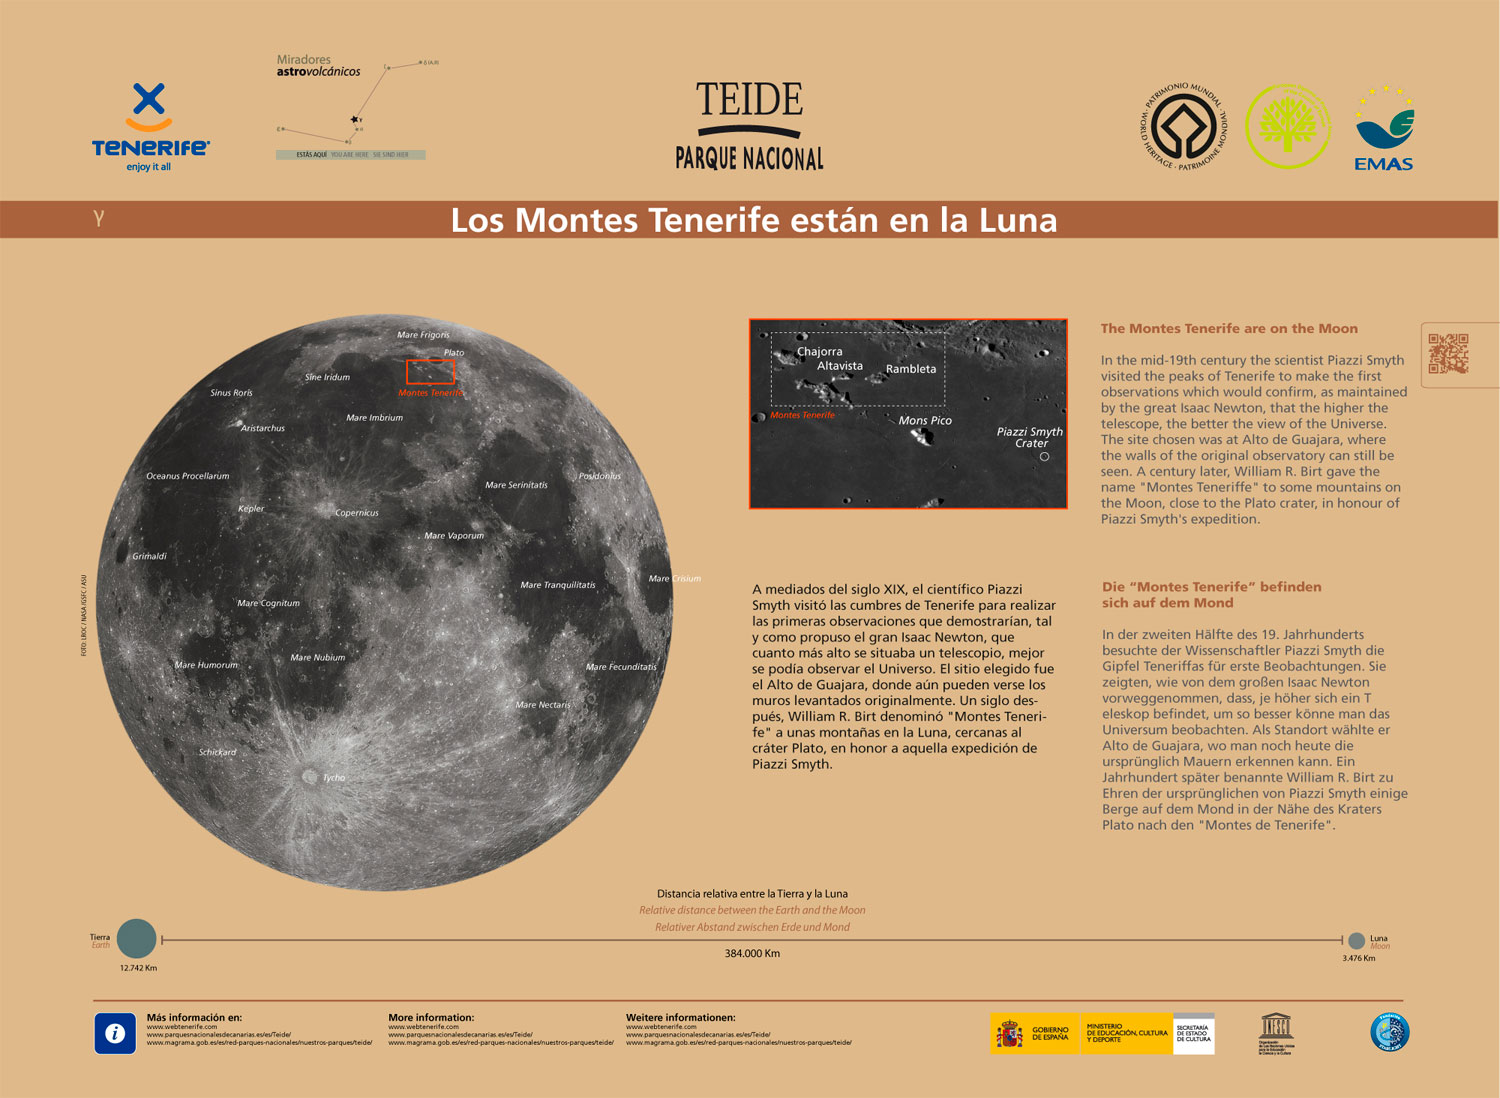 Die Berggruppe Montes Tenerife befindet sich auf dem Mond